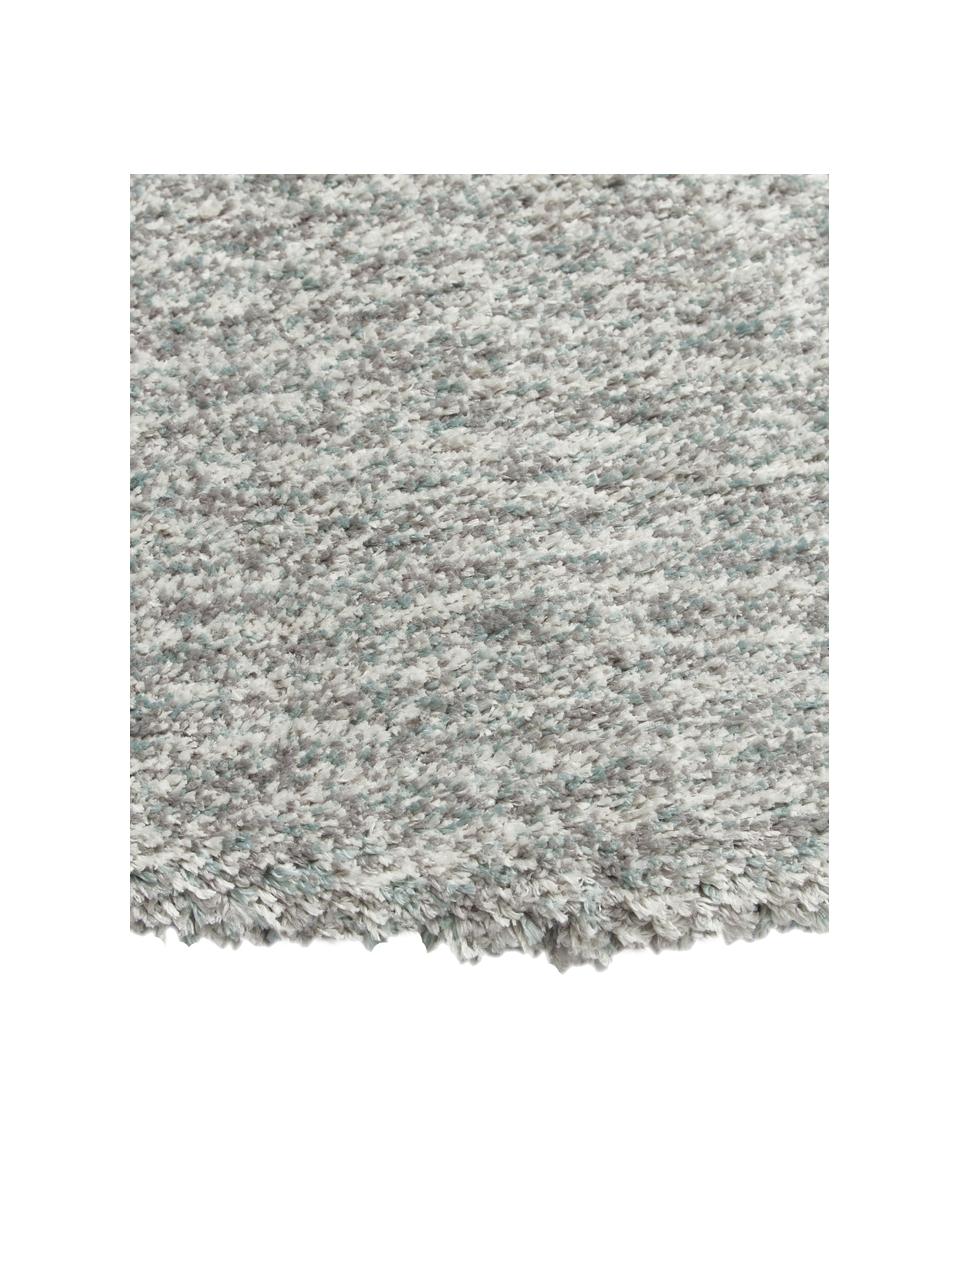 Flauschiger runder Hochflor-Teppich Marsha in Grau/Mintgrün, Rückseite: 55 % Polyester, 45 % Baum, Grautöne, Ø 150 cm (Größe M)